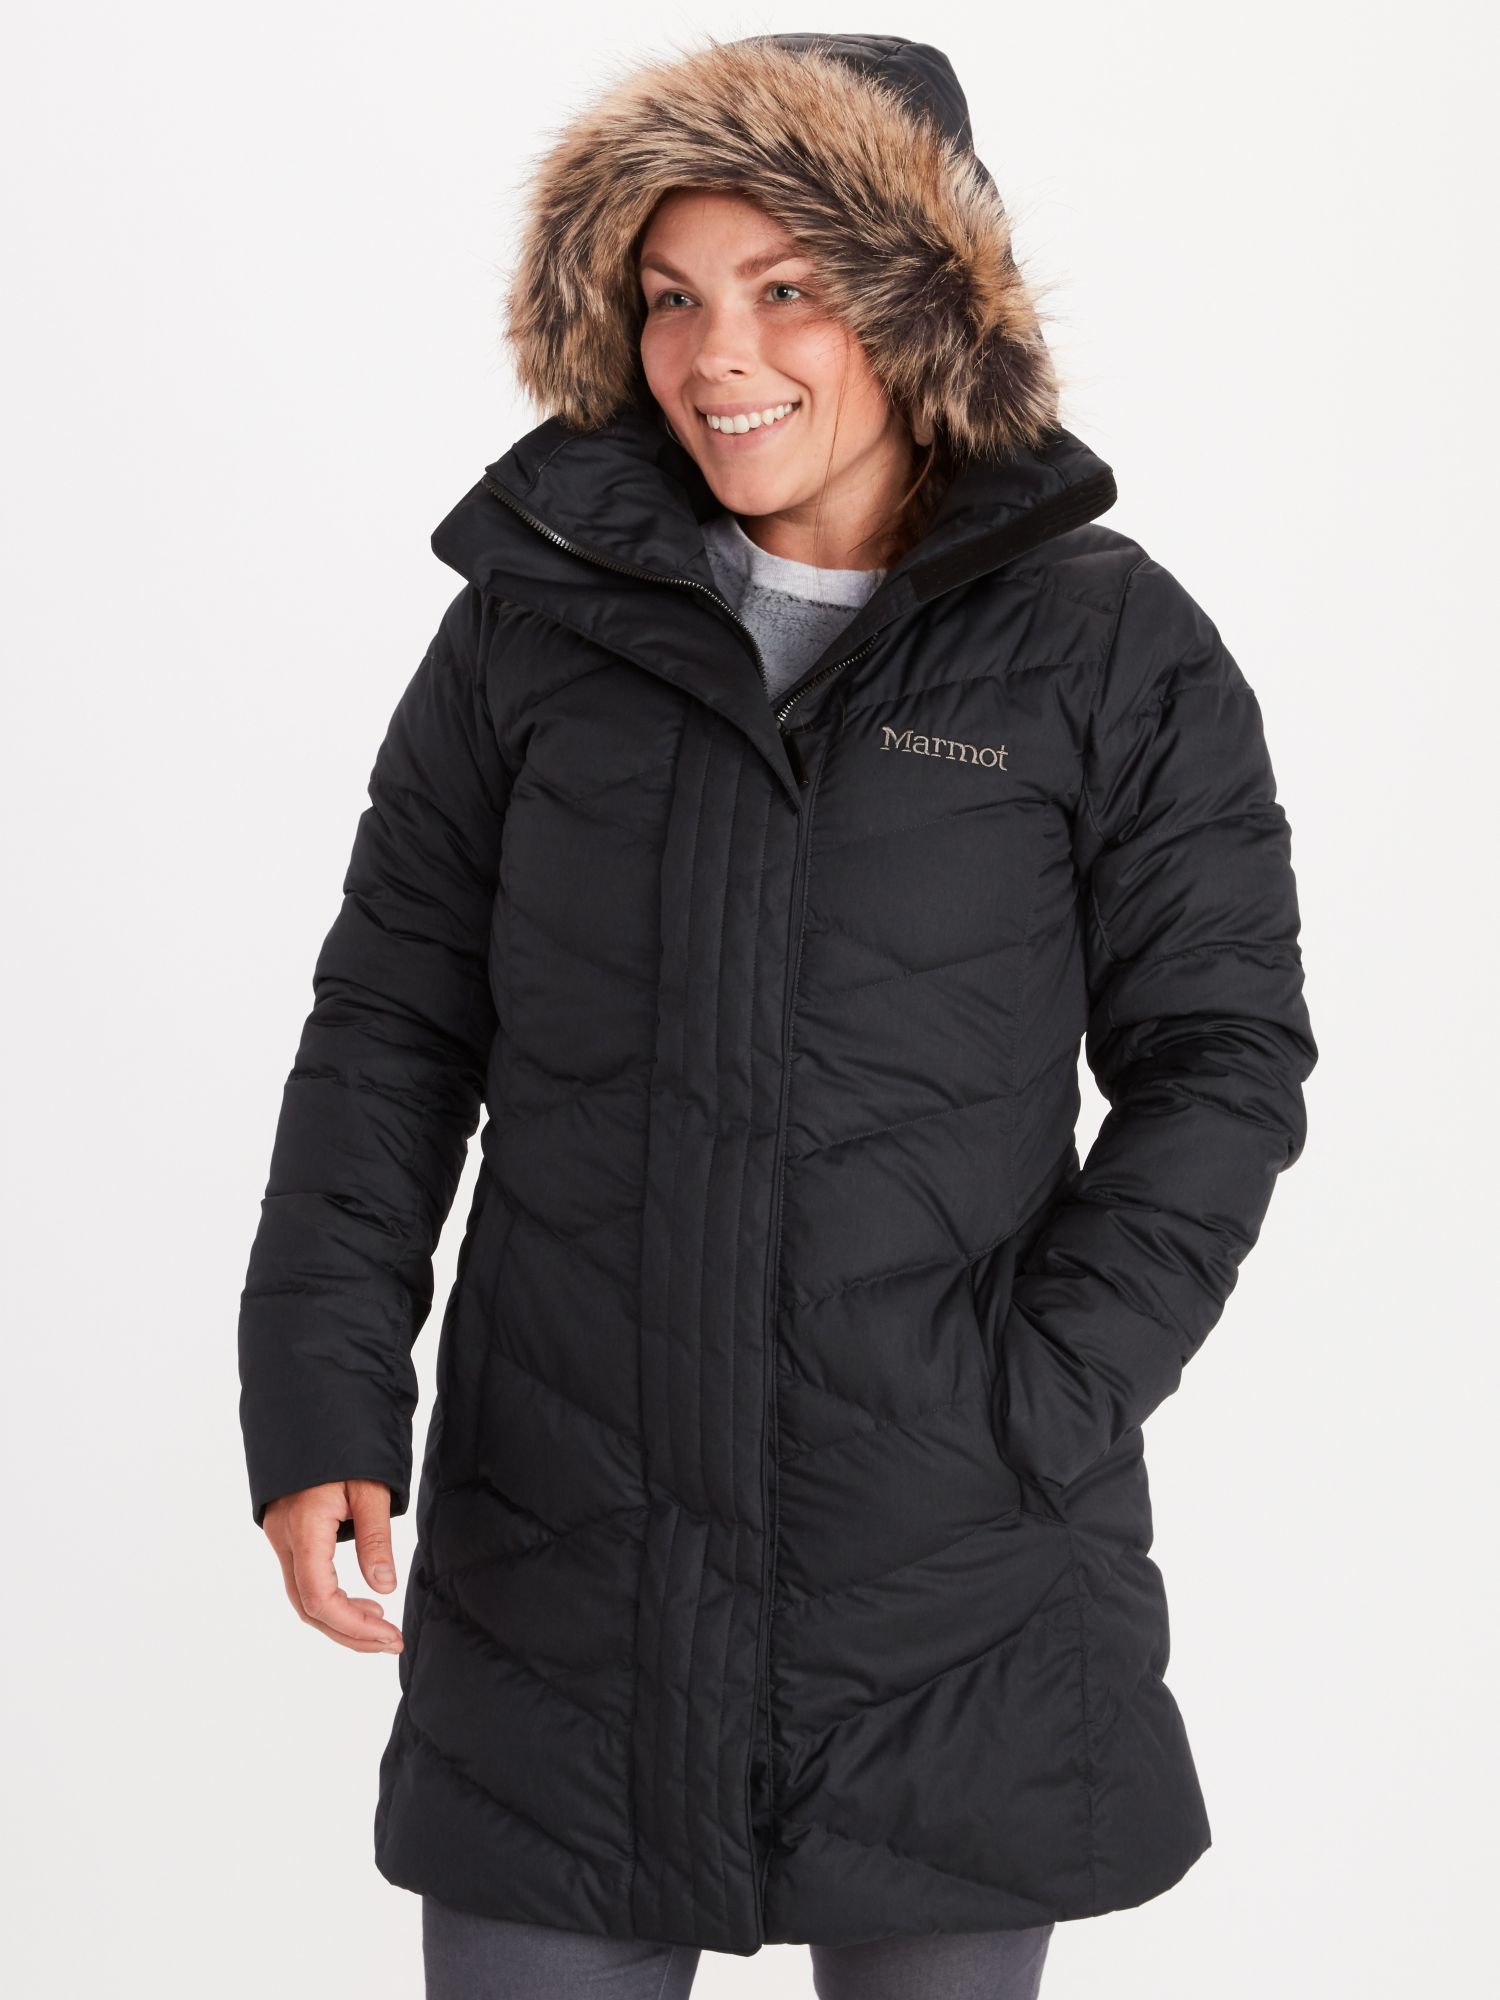 Women's Strollbridge Jacket | Marmot